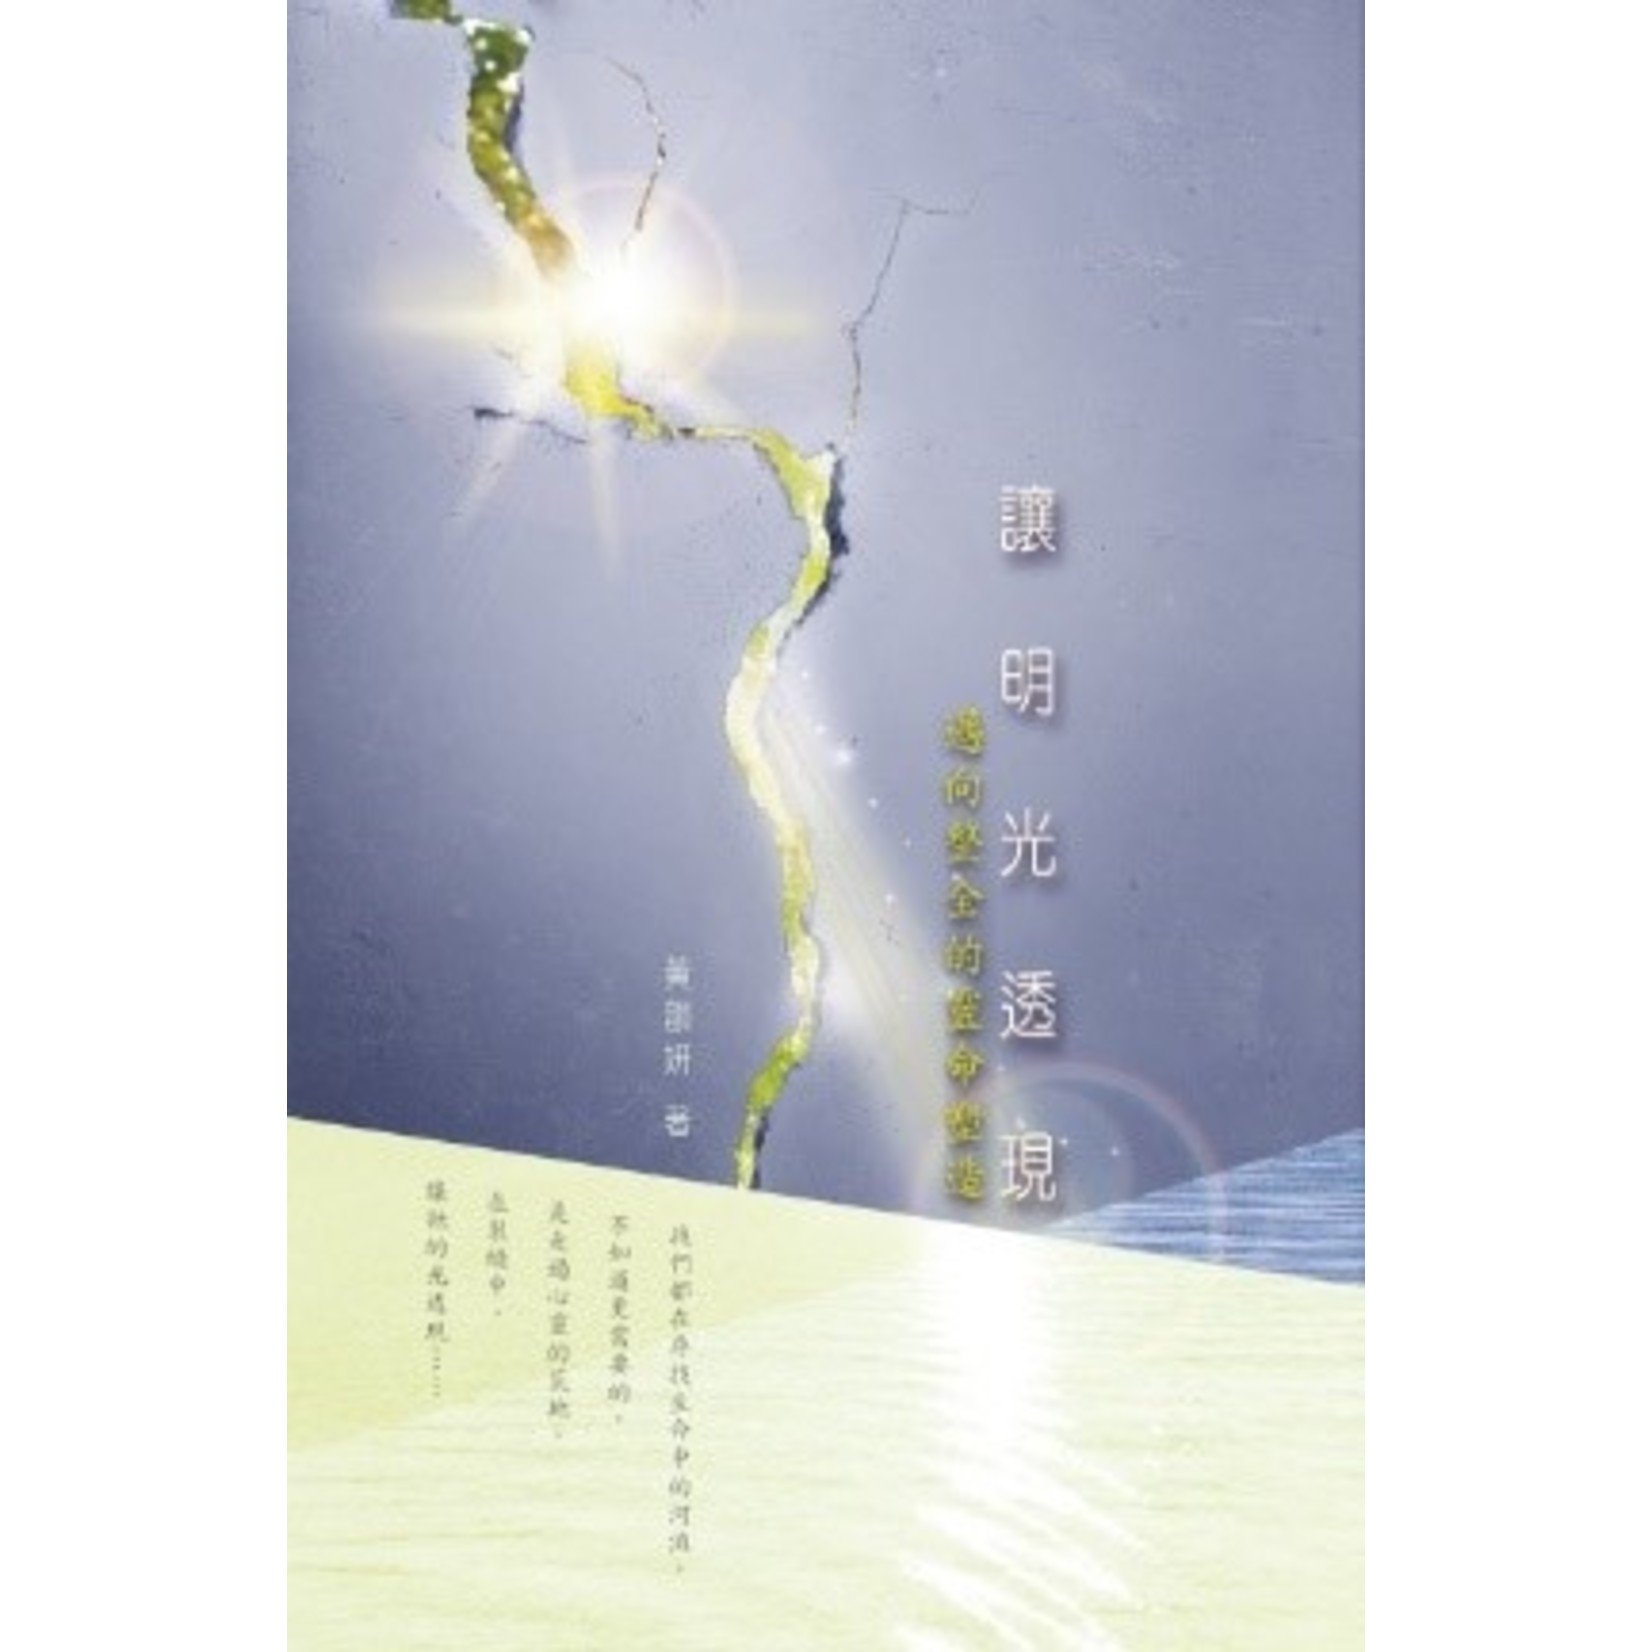 天道書樓 Tien Dao Publishing House 讓明光透現：邁向整全的靈命塑造